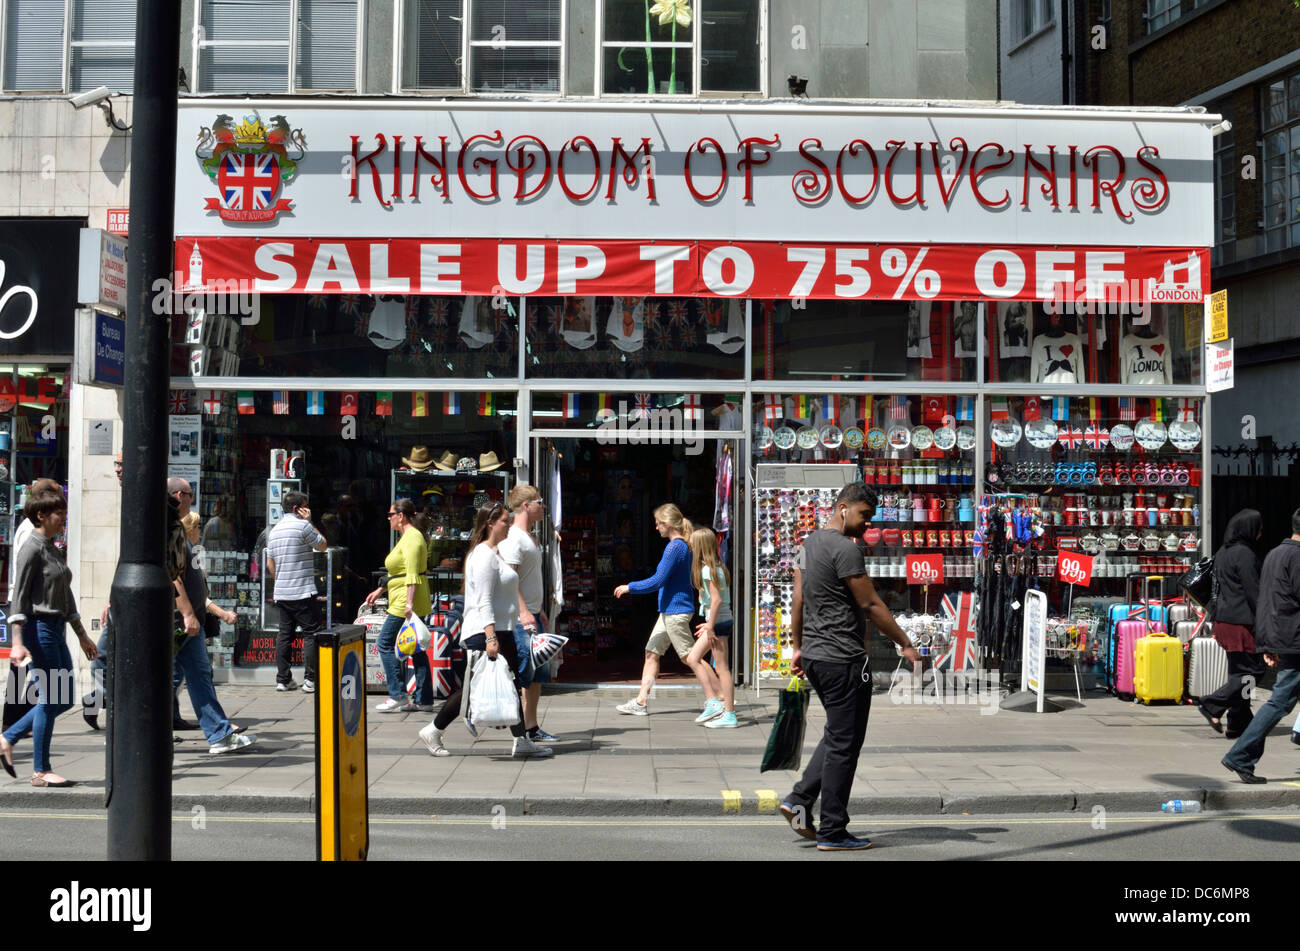 Royaume de Souvenirs souvenirs touristiques Oxford Street, London, UK Banque D'Images